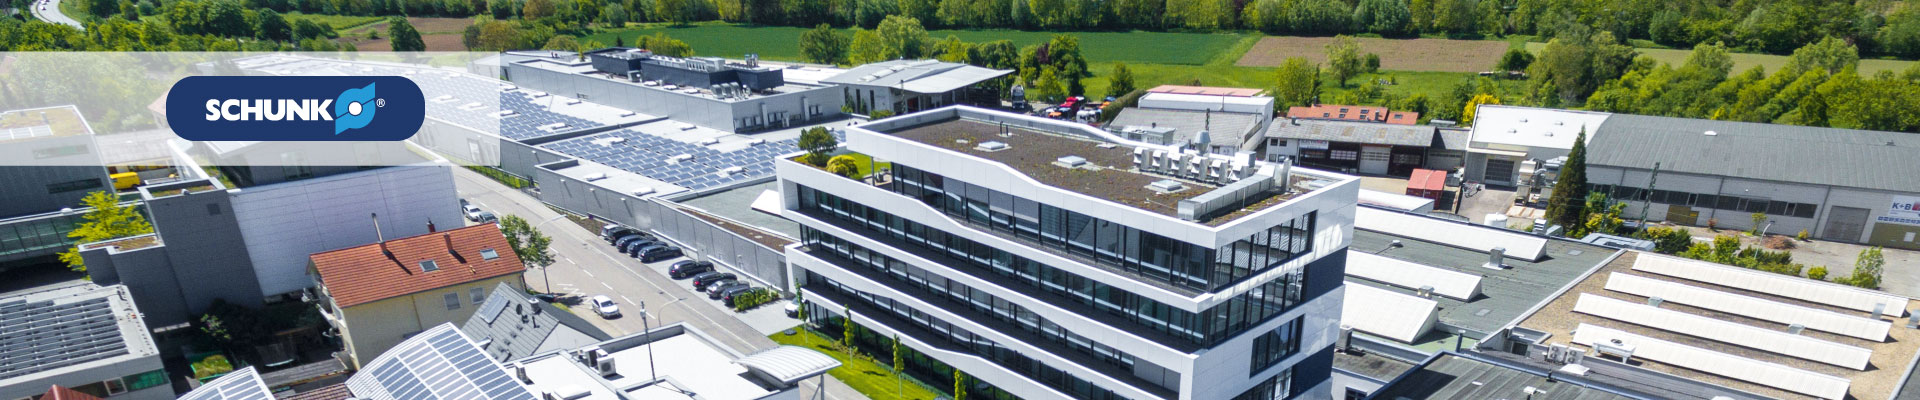 Success SCHUNK GmbH & Co. KG und ORBIS